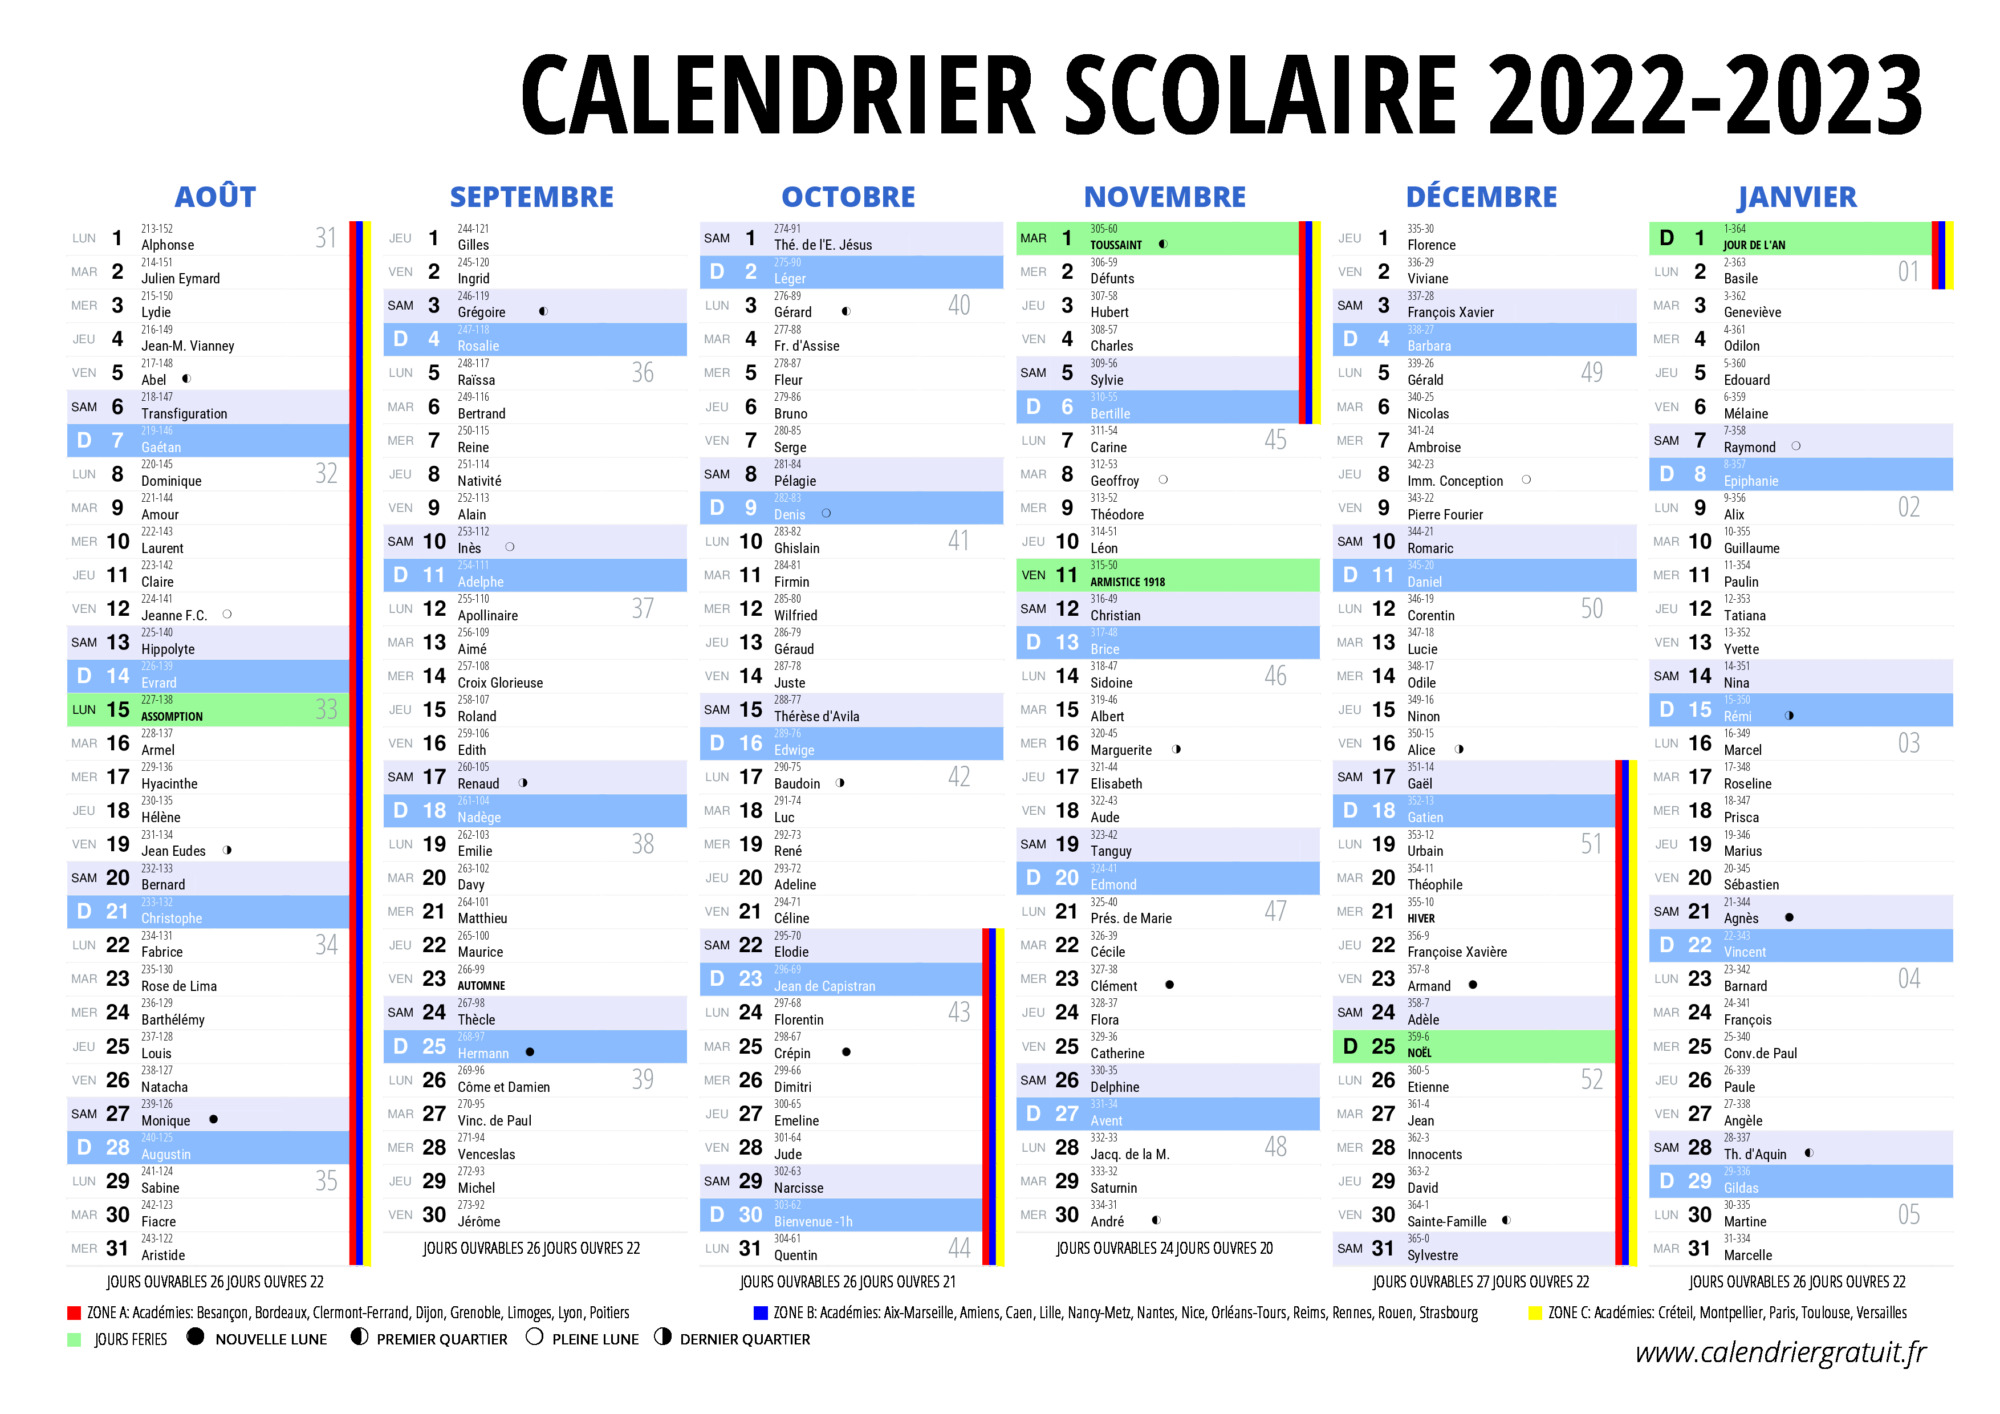 Calendrier Scolaire 2022 2023 Excel Calendrier scolaire 2022 2023 à imprimer